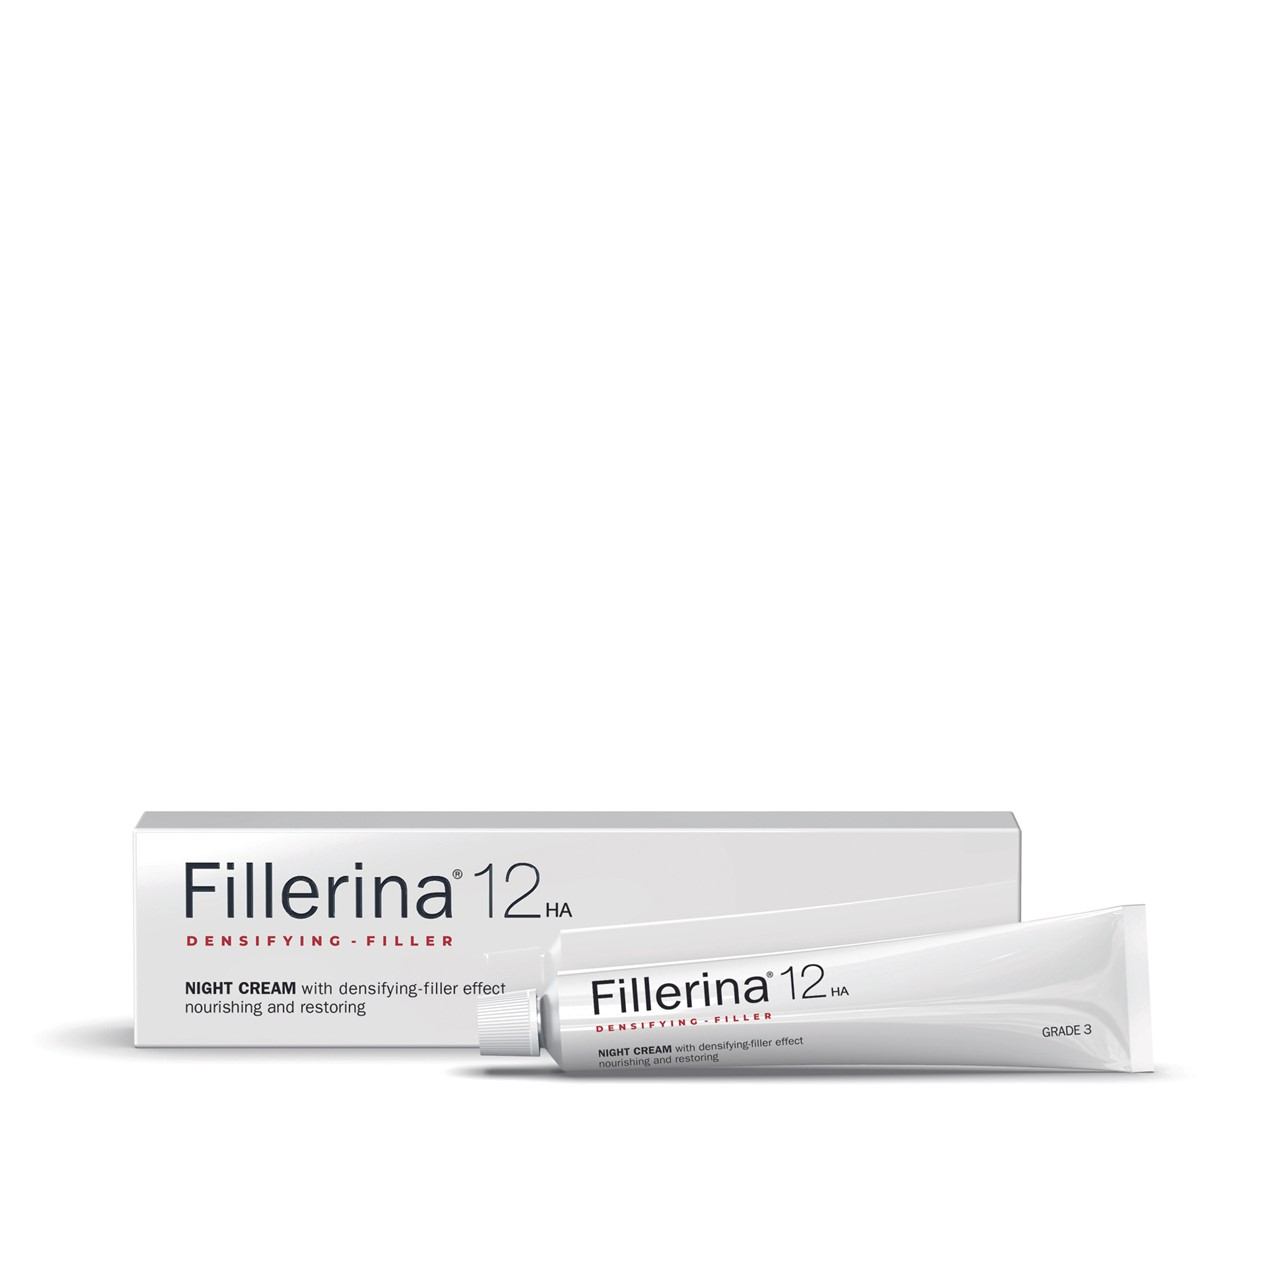 Fillerina 12HA Densifying-Filler Night Cream Grade 3 50ml (1.69floz)